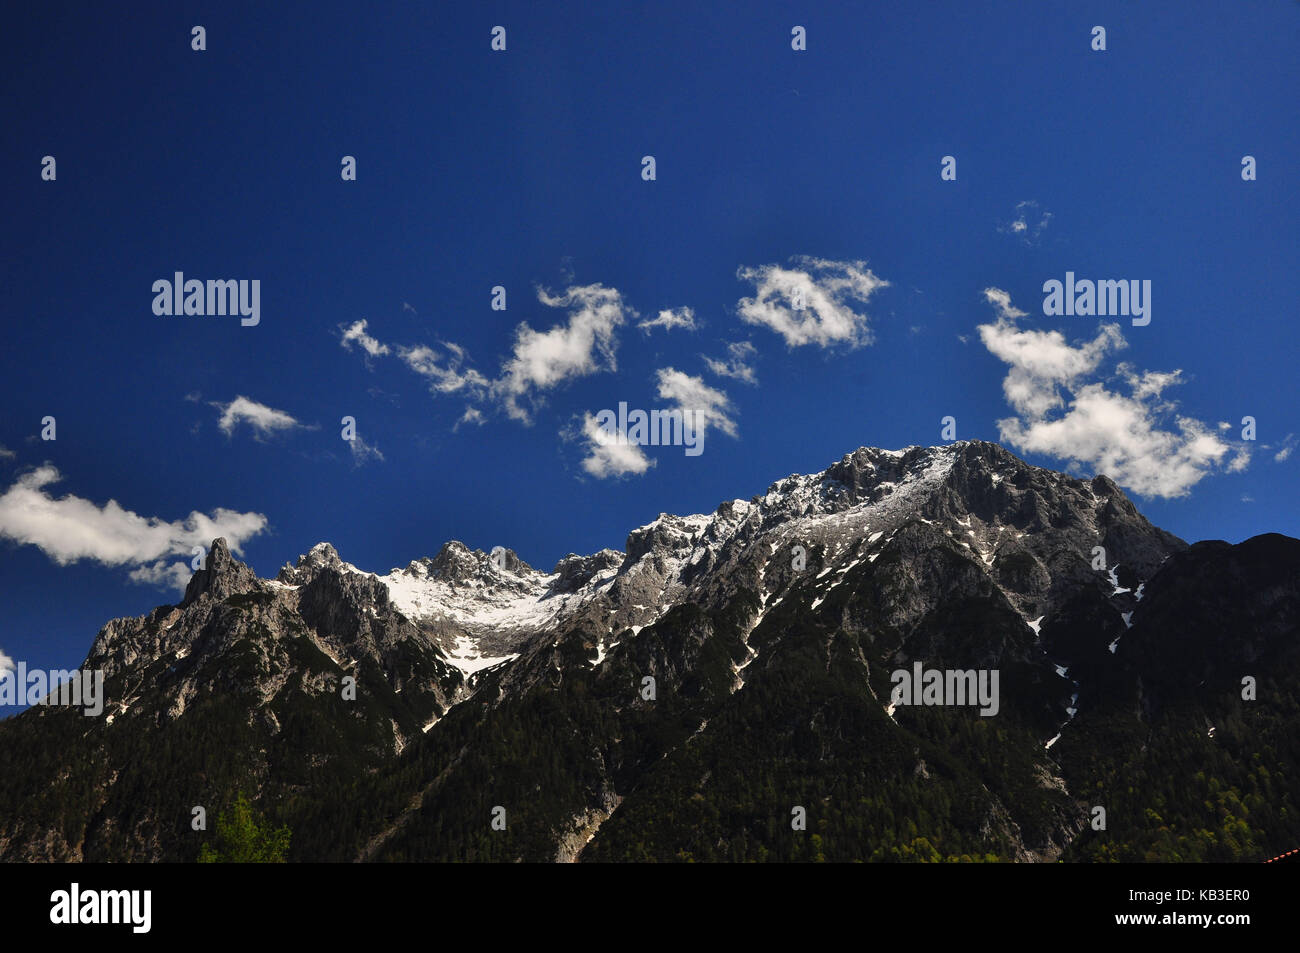 Alps, mountains, mountain peaks, summer skys, Stock Photo